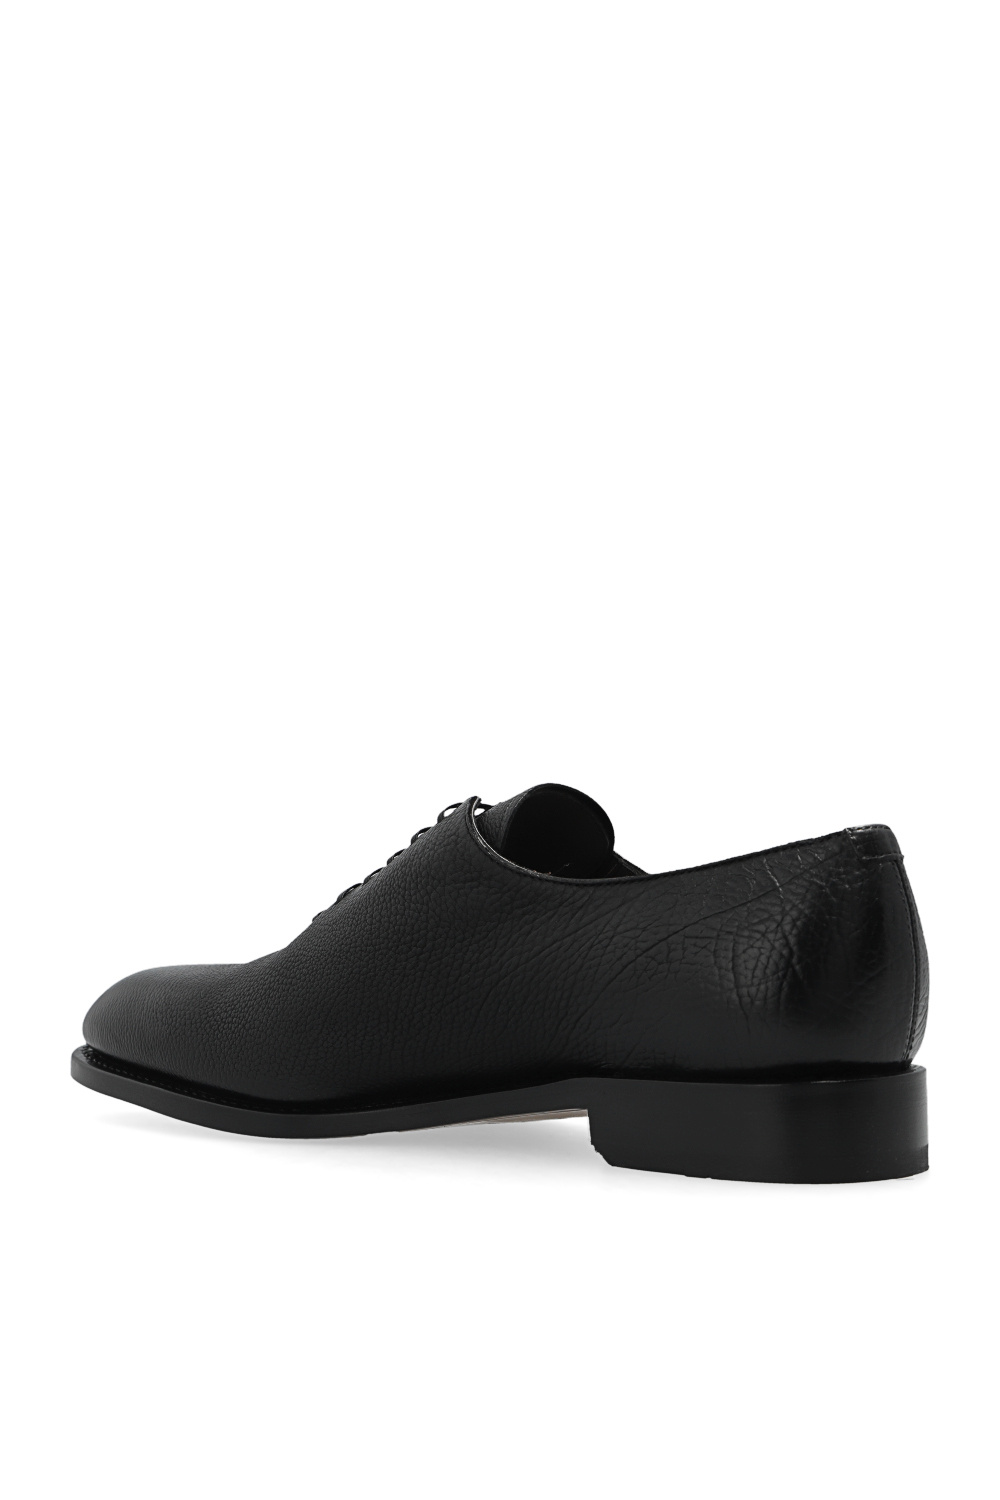 Salvatore Ferragamo ‘Angiolo’ Oxford shoes